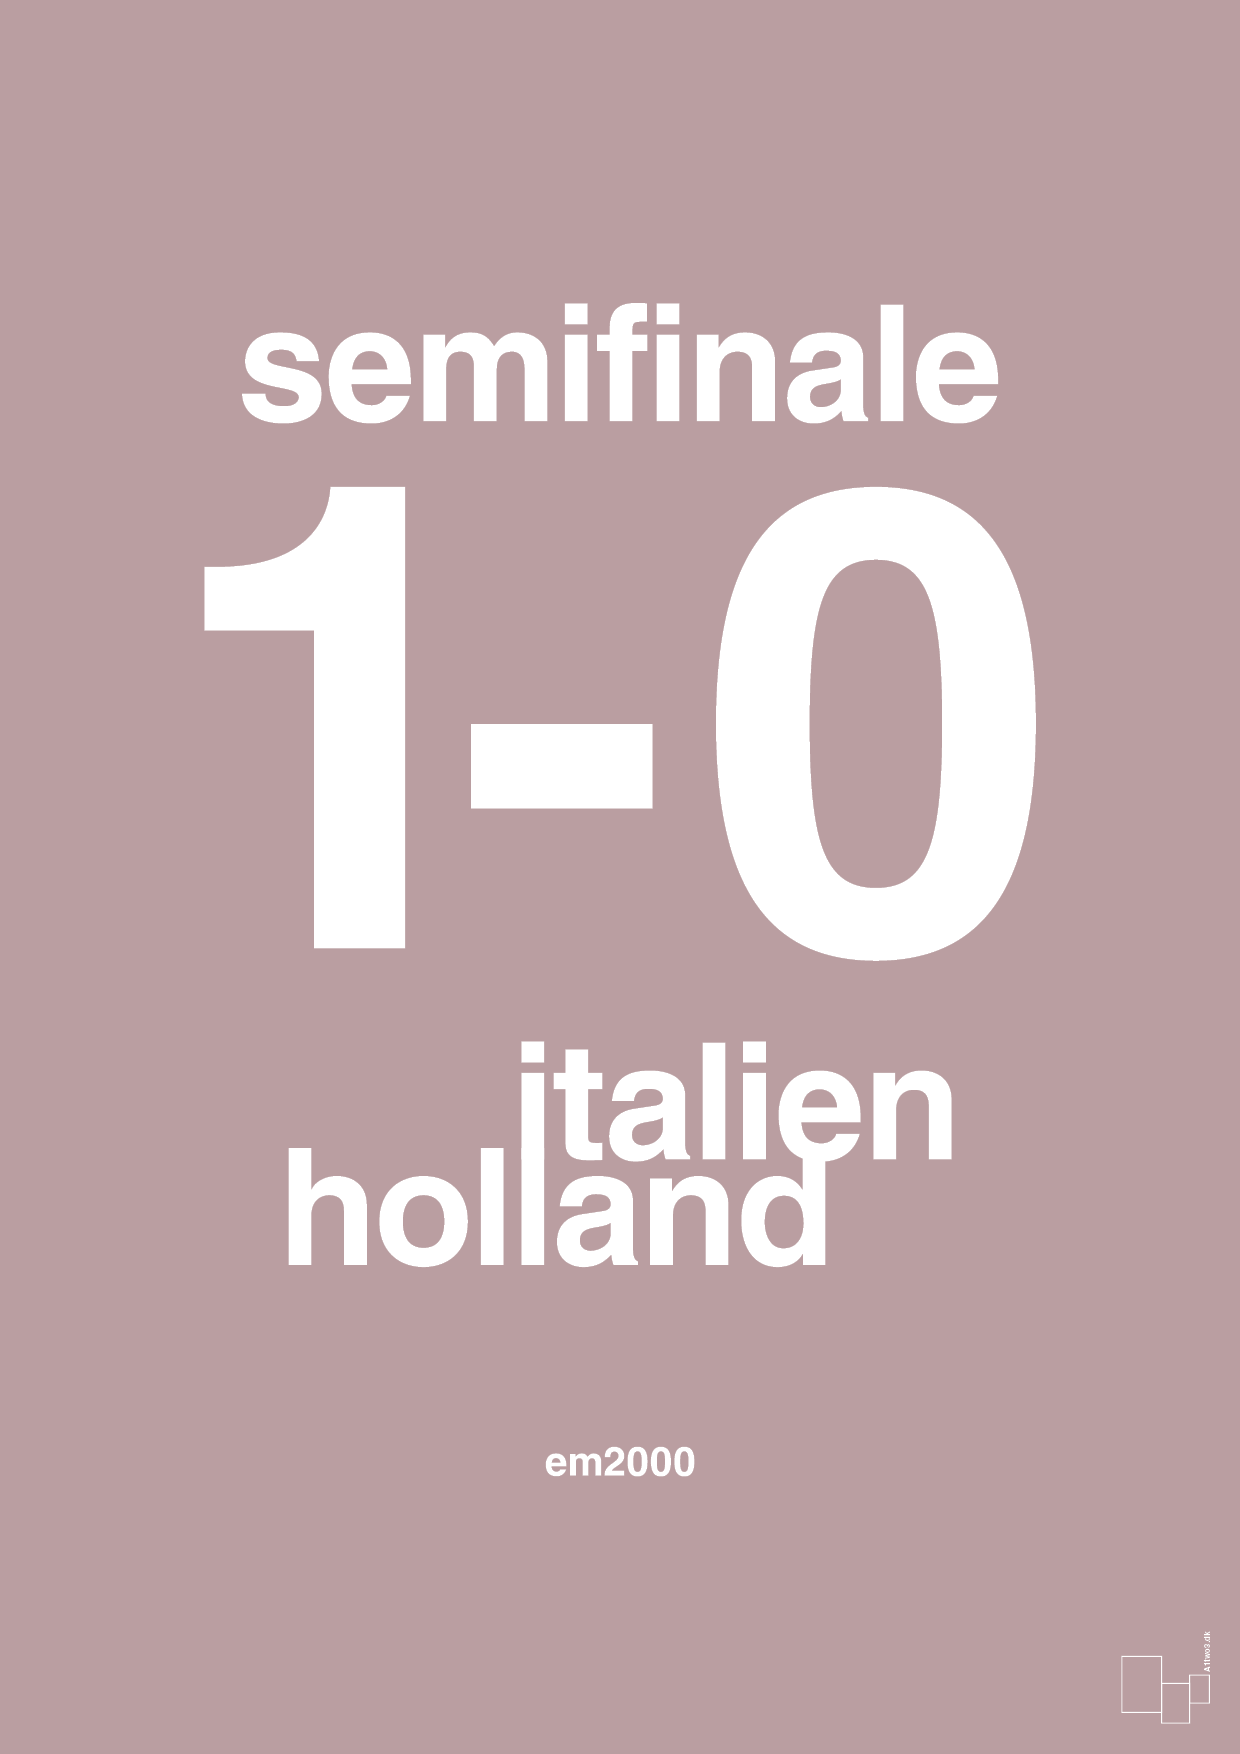 resultat for fodbold em semifinale A i 2000 - Plakat med Sport & Fritid i Light Rose